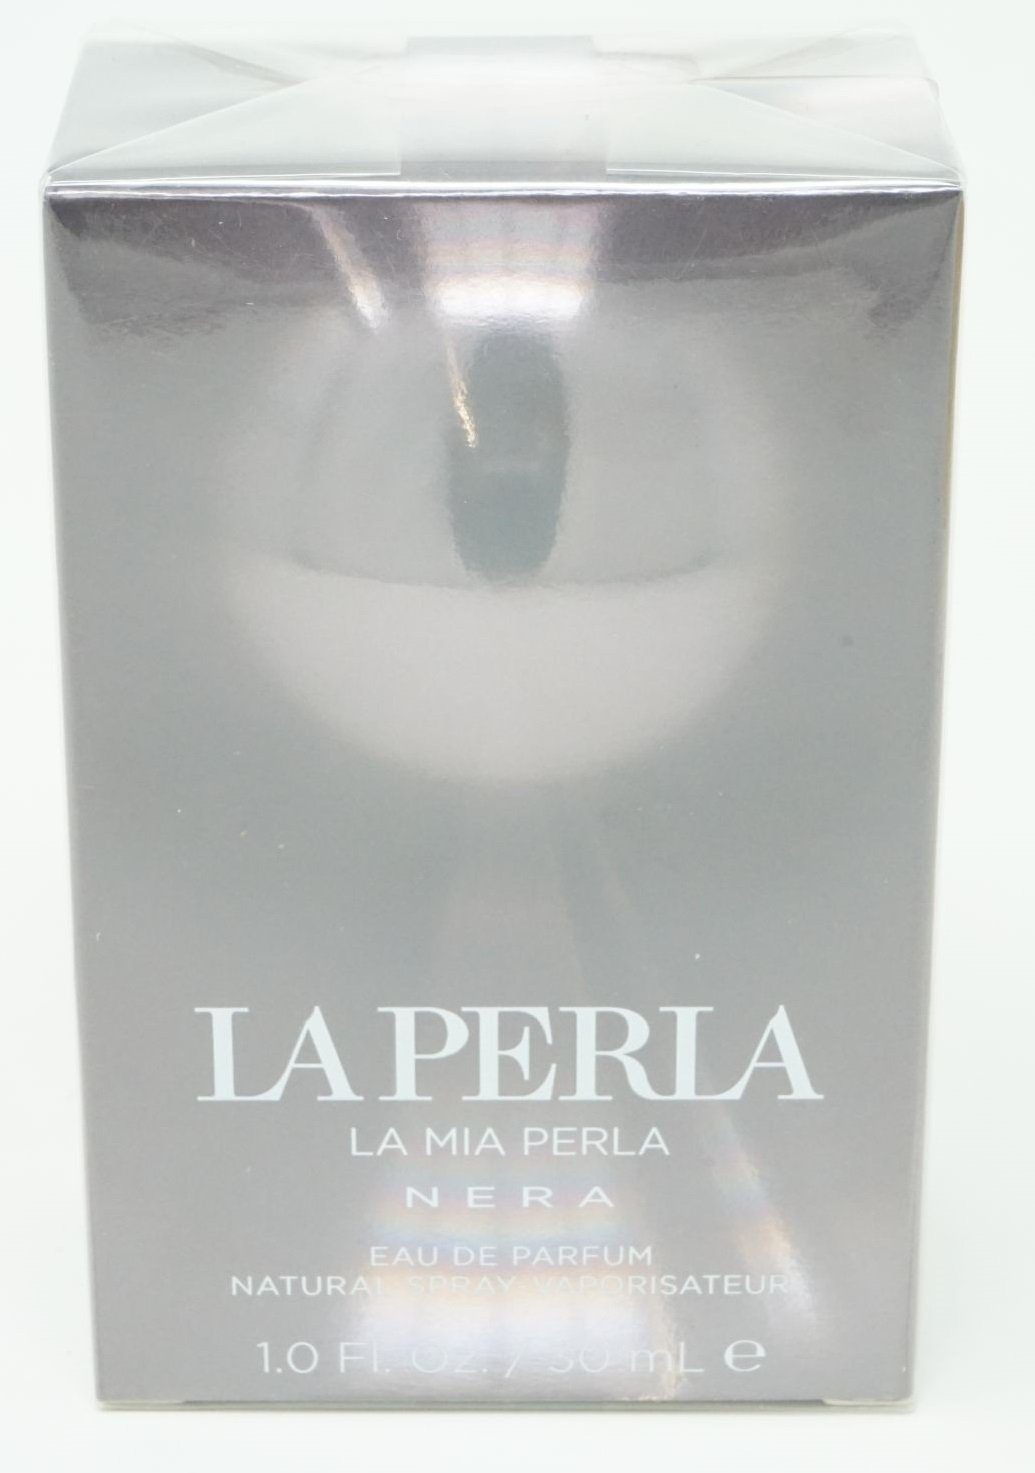 La Perla Eau de Parfum La Perla La Mia Perla Nera Eau de parfum Spray 30 ml | Eau de Parfum